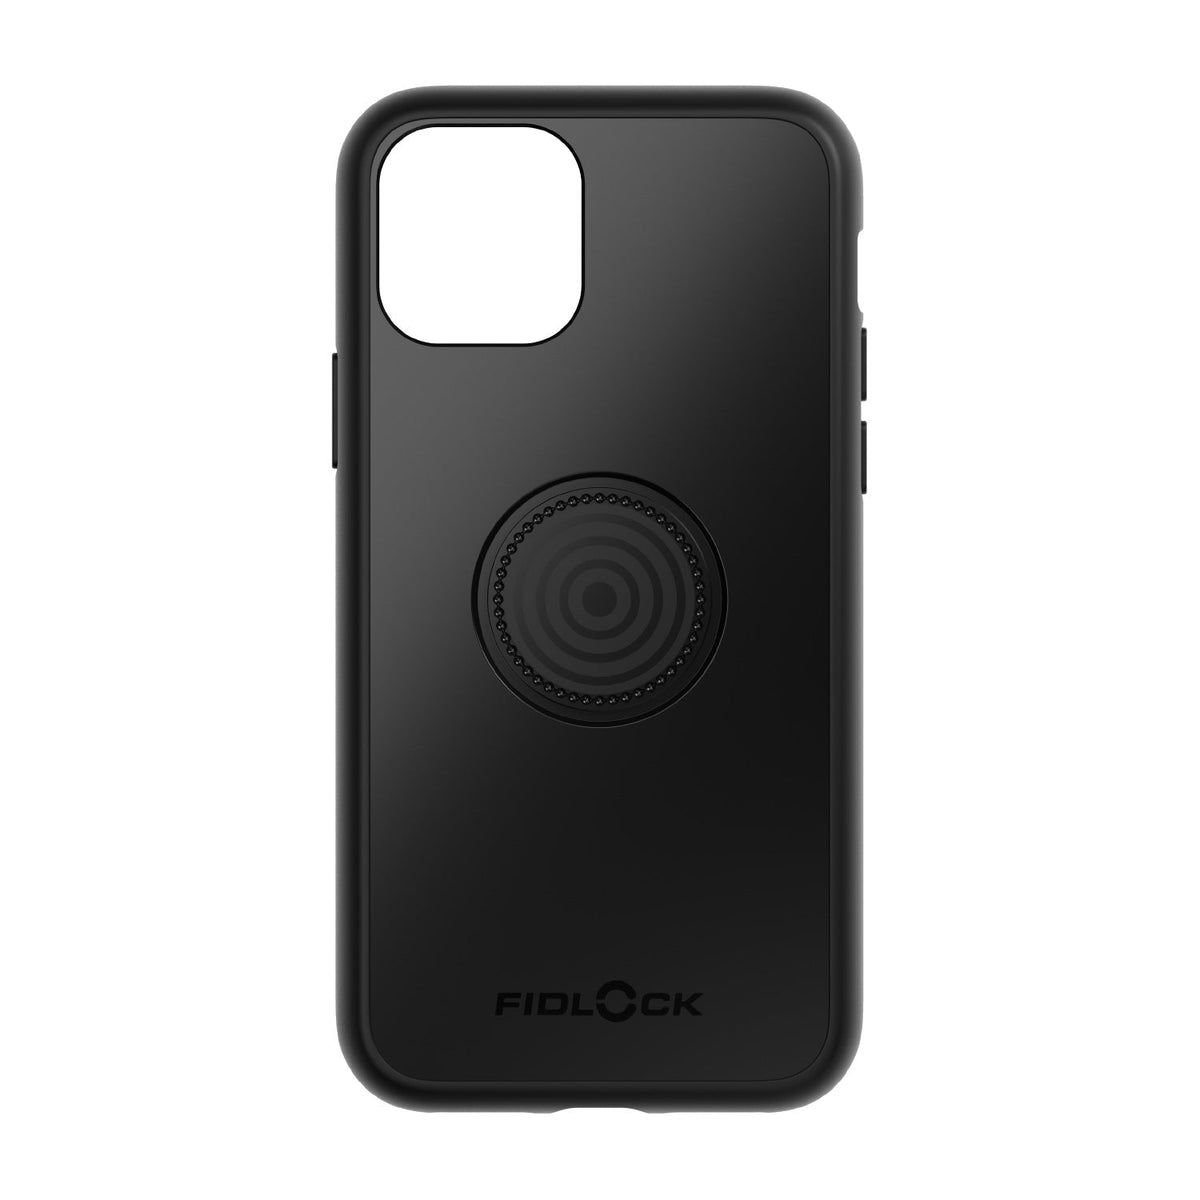 iPhone 11 Pro VACUUM magnetic smartphone case